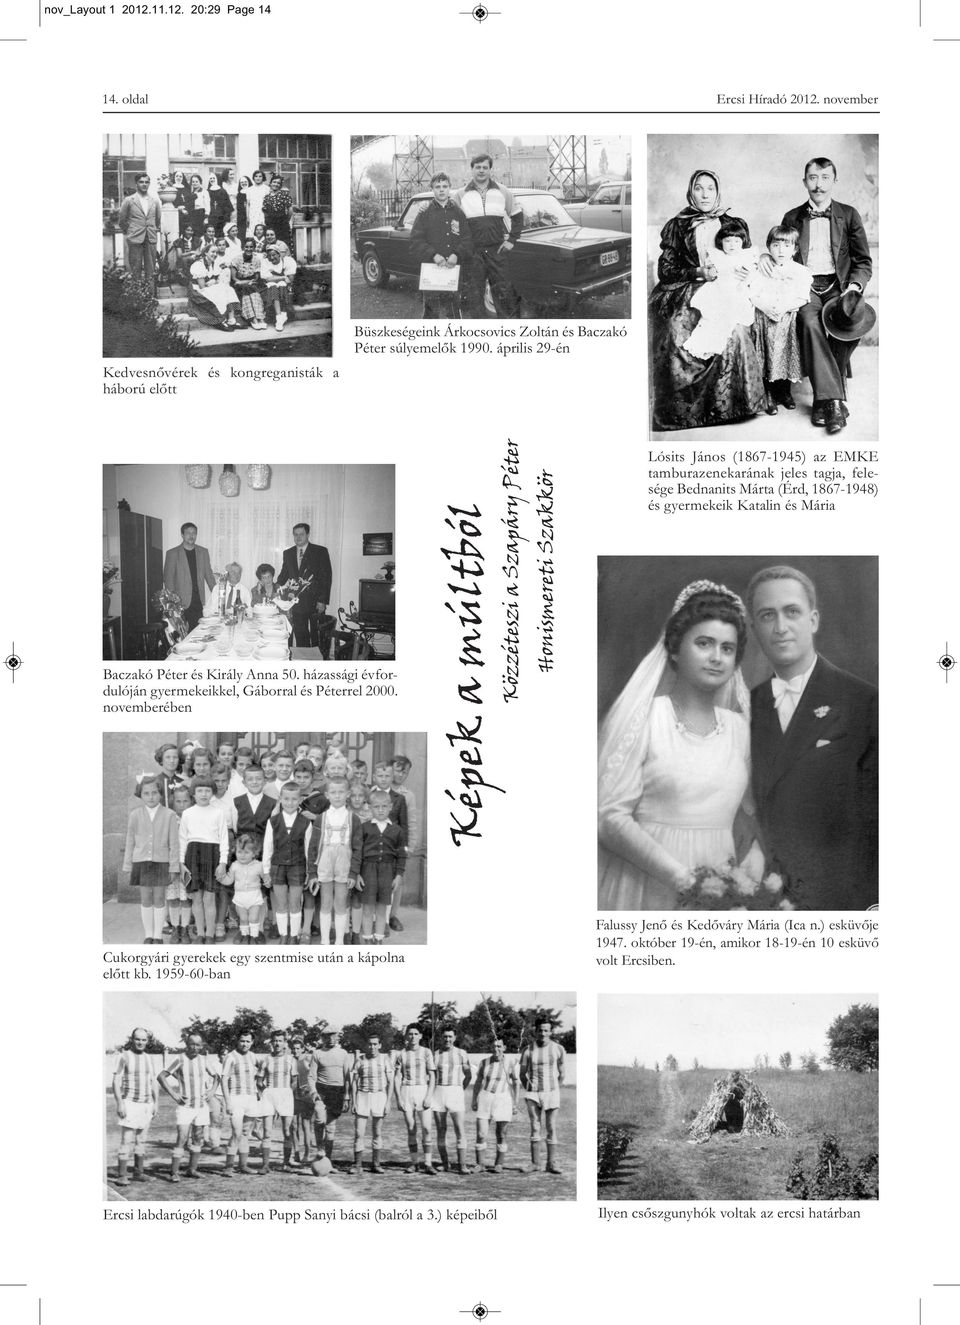 április 29-én Baczakó Péter és Király Anna 50. házassági évfordulóján gyermekeikkel, Gáborral és Péterrel 2000. novemberében Cukorgyári gyerekek egy szentmise után a kápolna előtt kb.